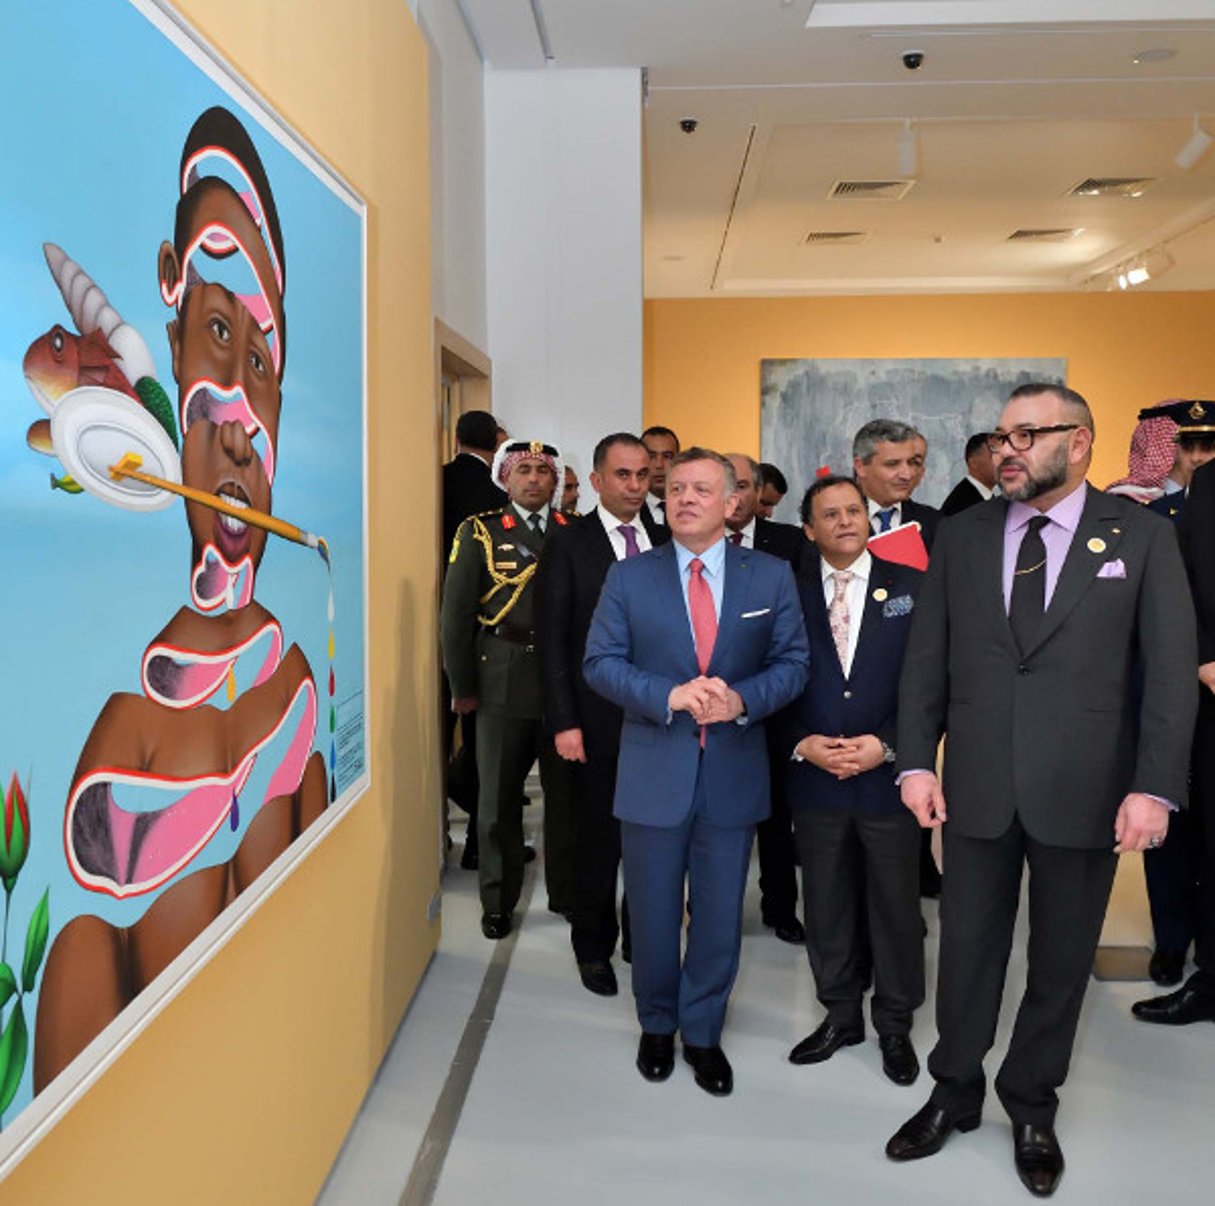 Le roi Mohammed VI en compagnie du roi Abdallah de Jordanie  lors de la visite inaugurale de l’exposition « Rabat, capitale d’Afrique » le jeudi 23 mars 2017. © Musée Mohammed VI d’art contemporain